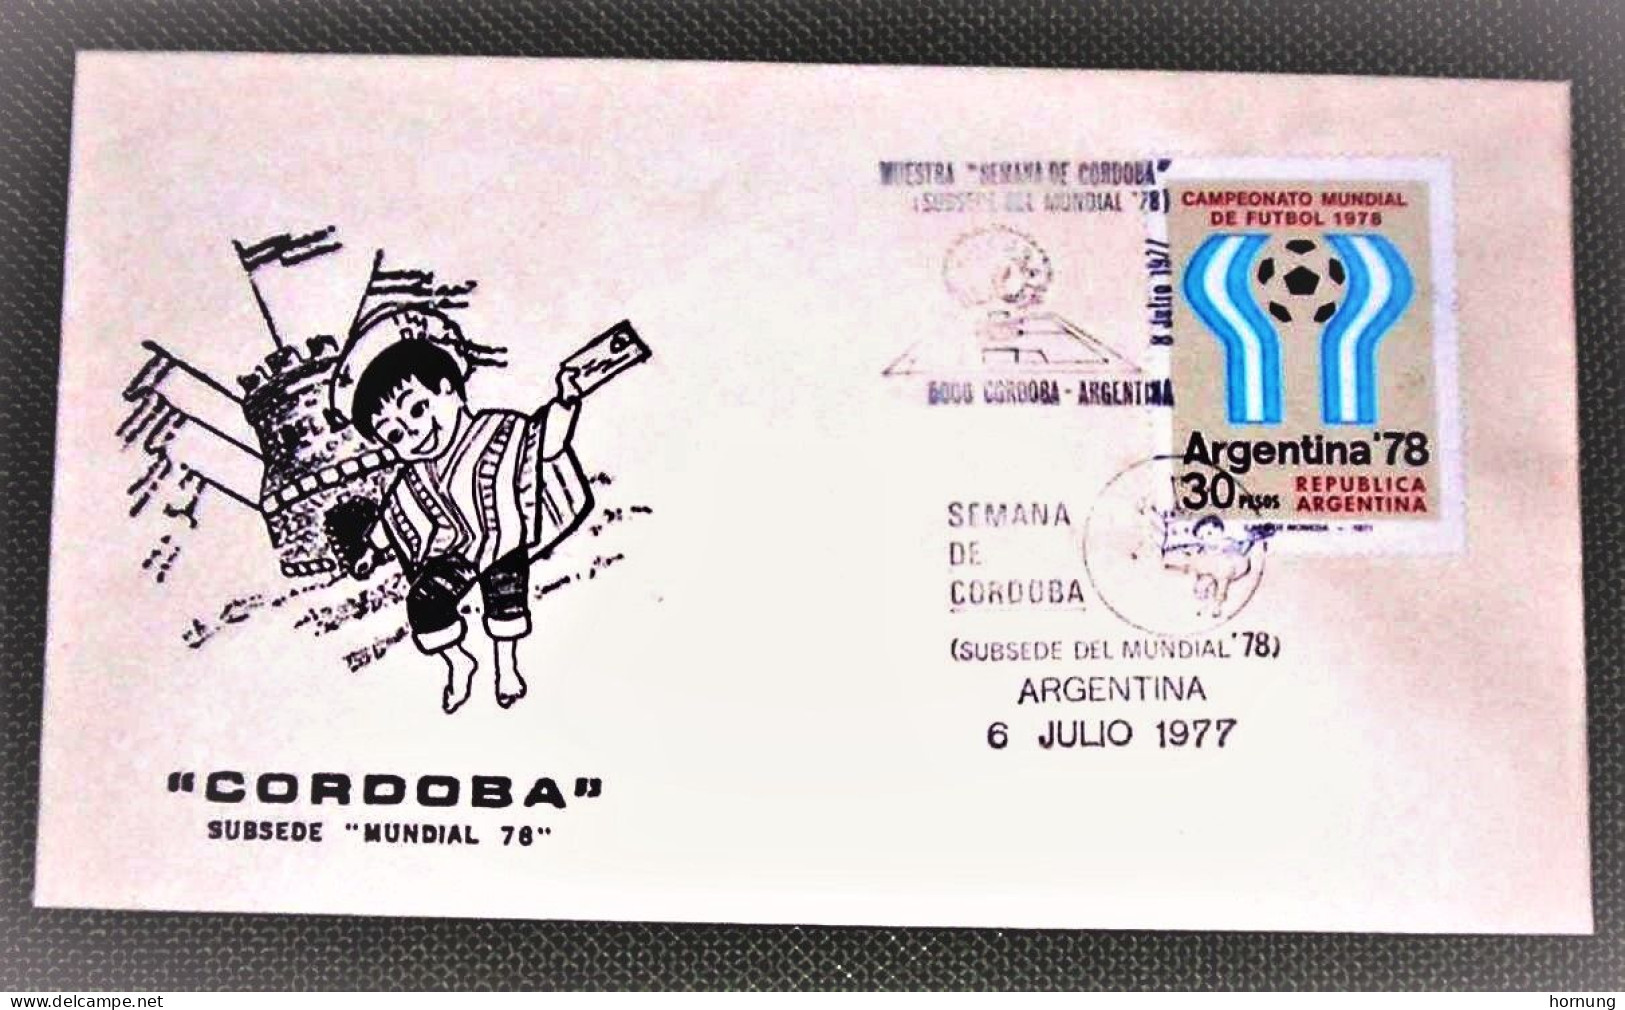 Argentina,1978,CORDOBA Subsede "MUNDIAL 78 ", ARGENTINA  6 JULIO 1977. - Gebraucht